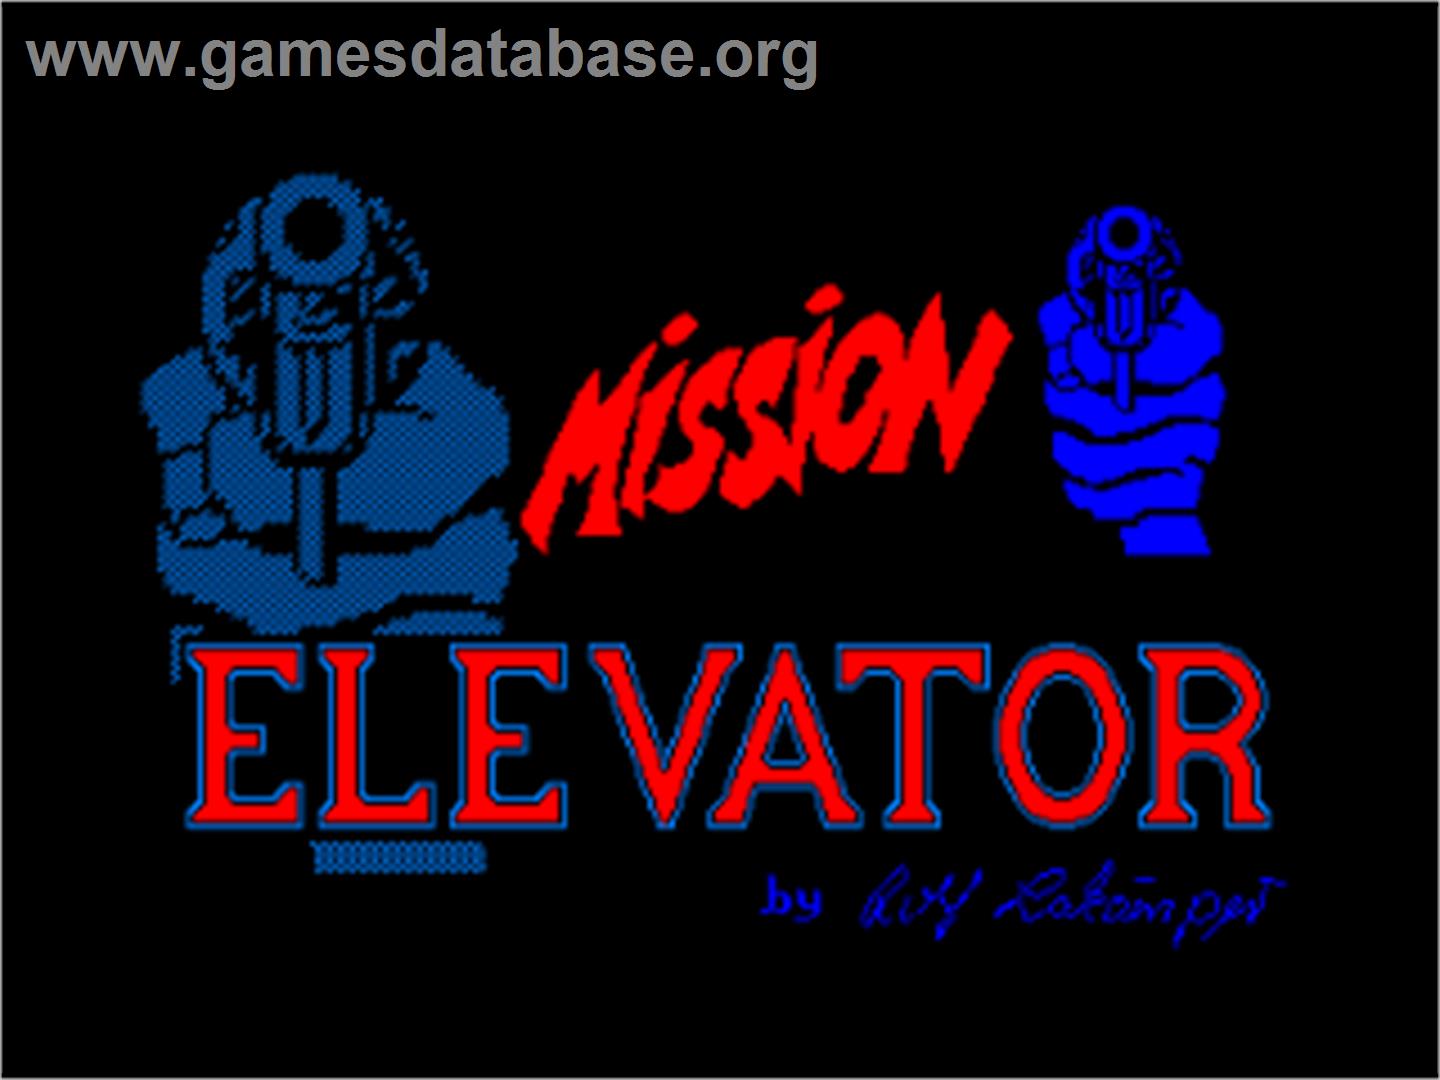 Mission Elevator - Amstrad CPC - Artwork - Title Screen